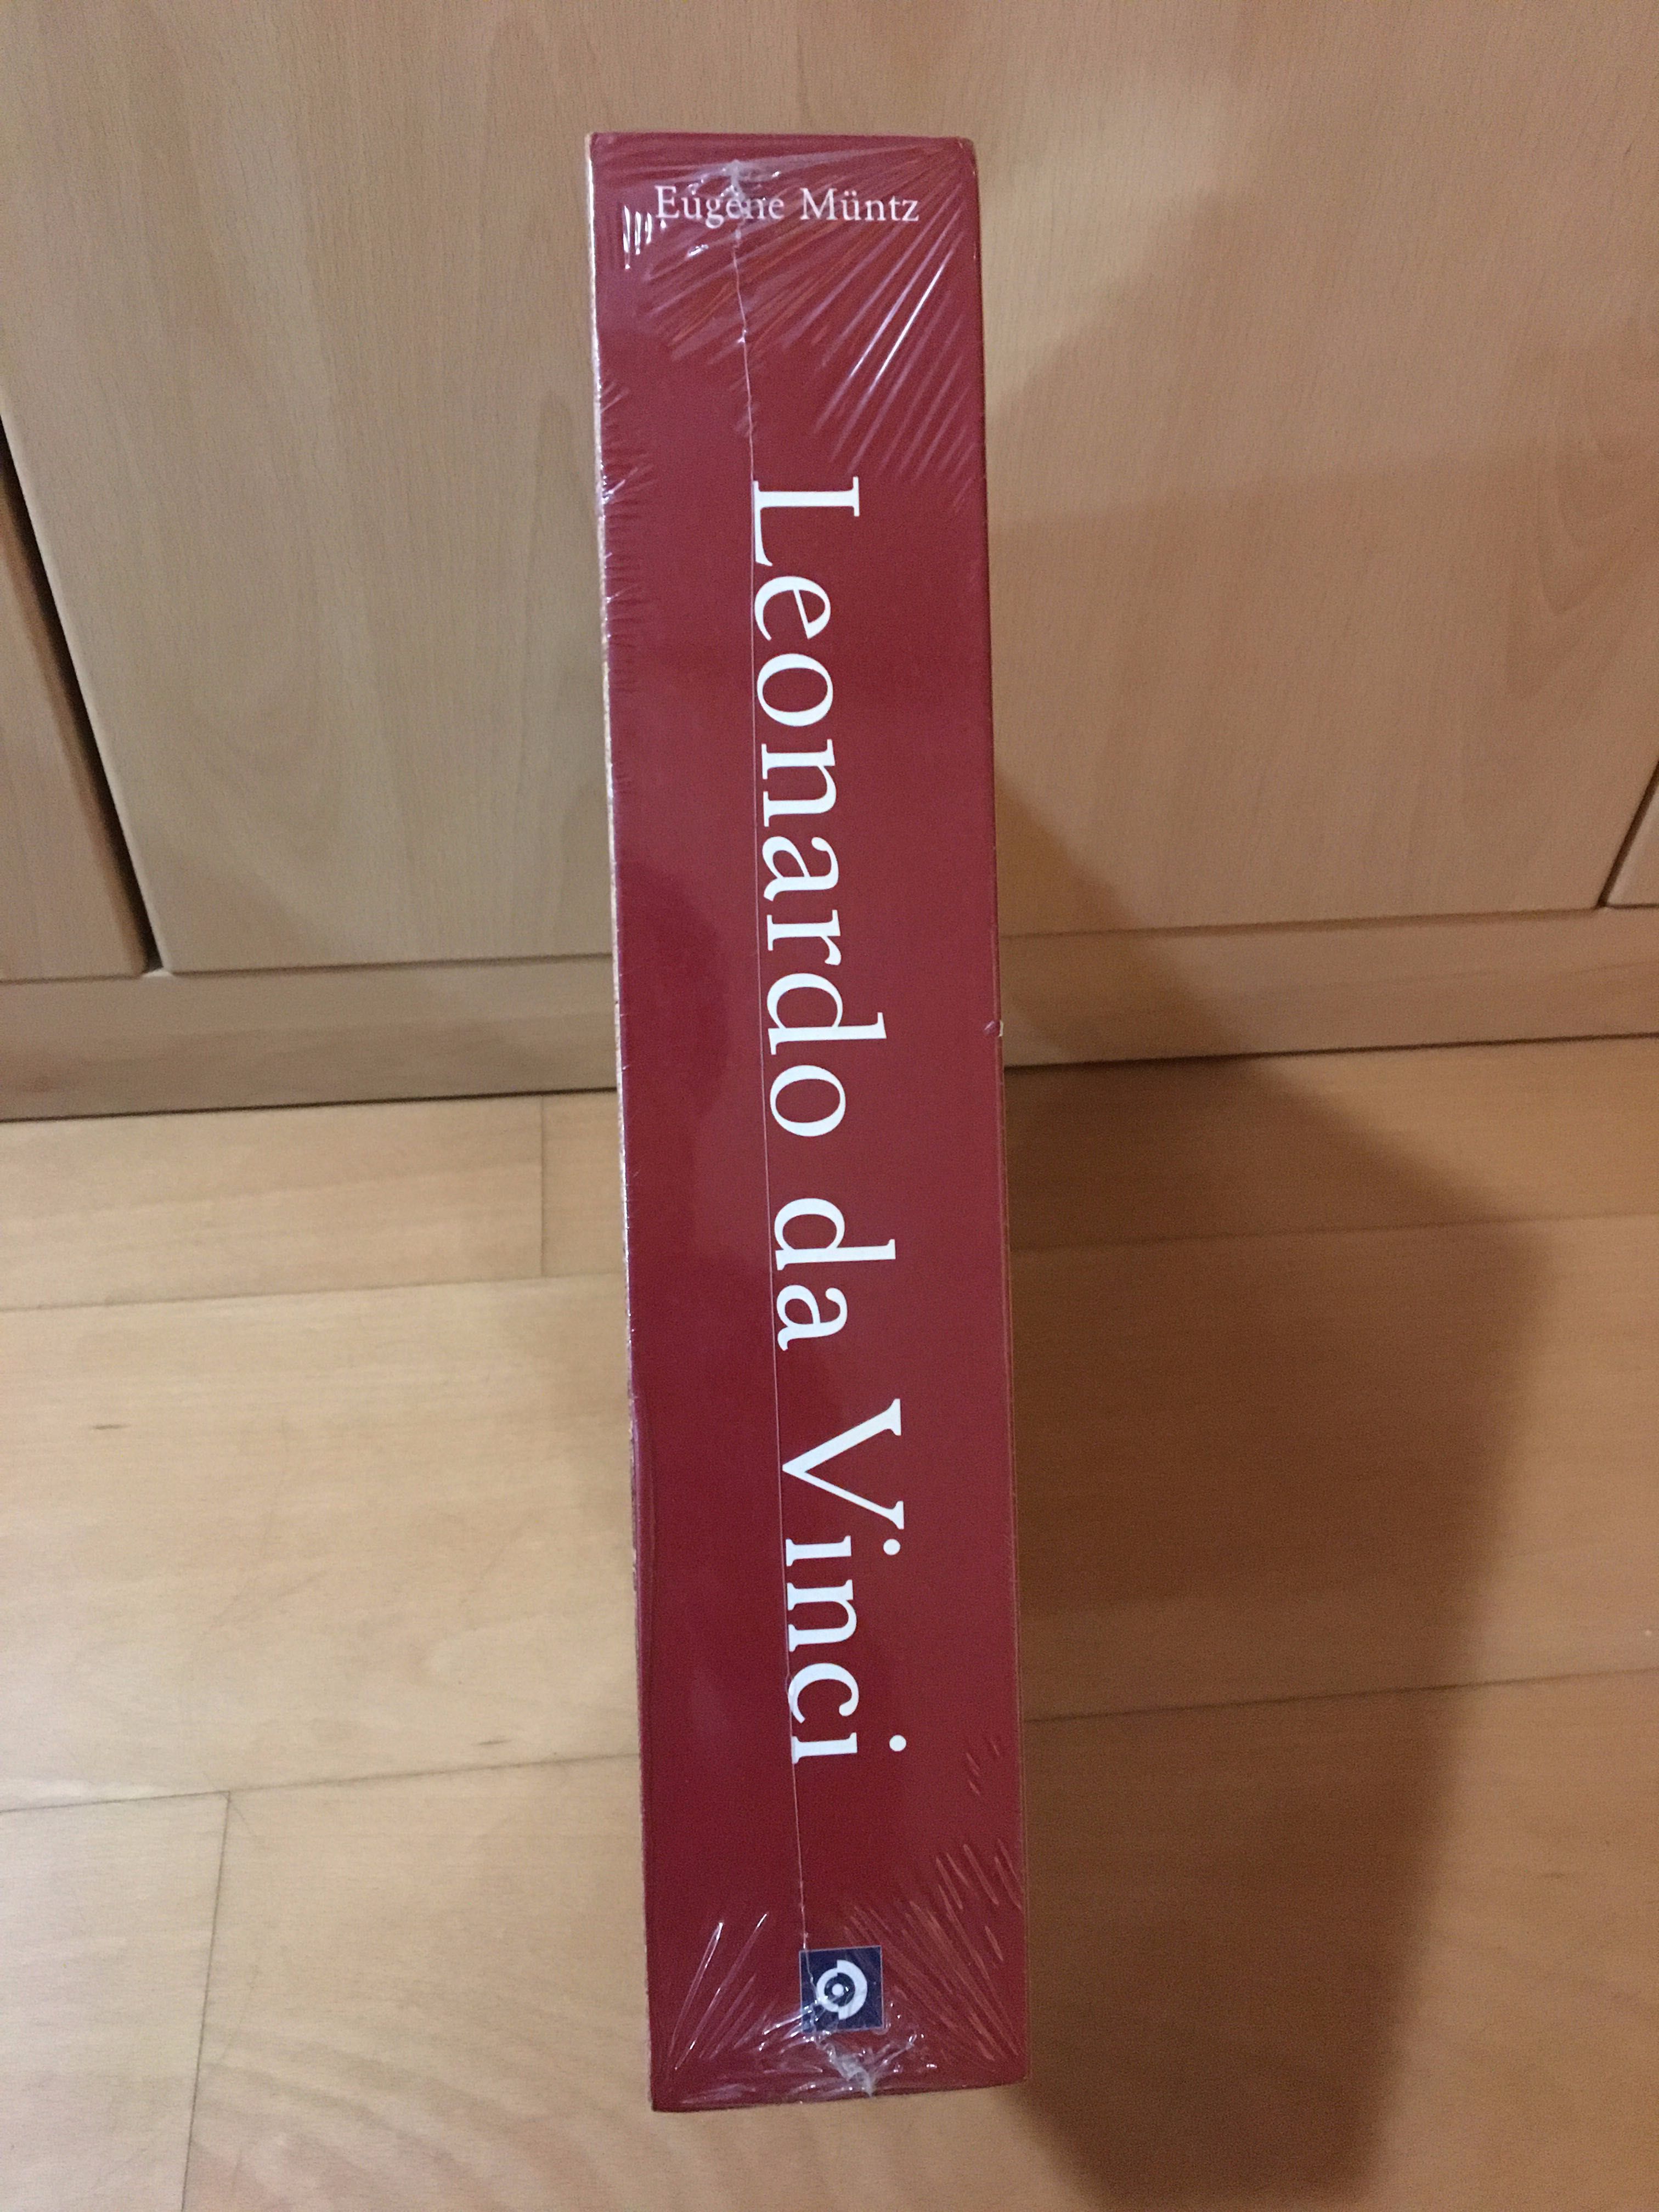 [NOVO] Leonardo Da vinci - Livro enorme selado Davinci Arte e pintura